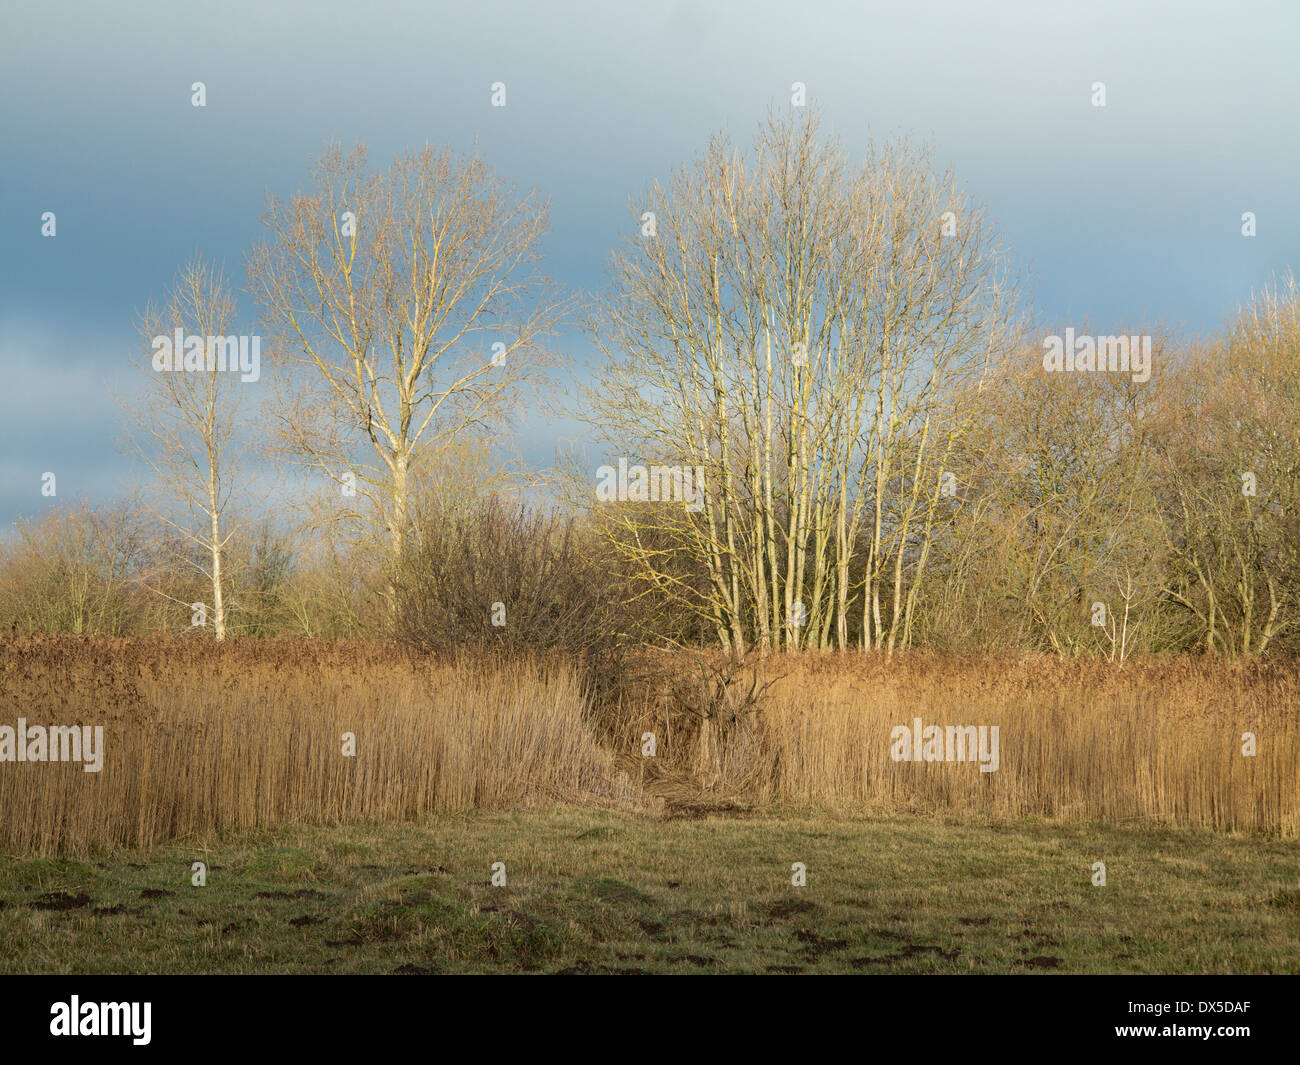 Sunny scena invernale con canneti a rspb fowlmere riserva naturale cambridgeshire England Regno Unito Foto Stock